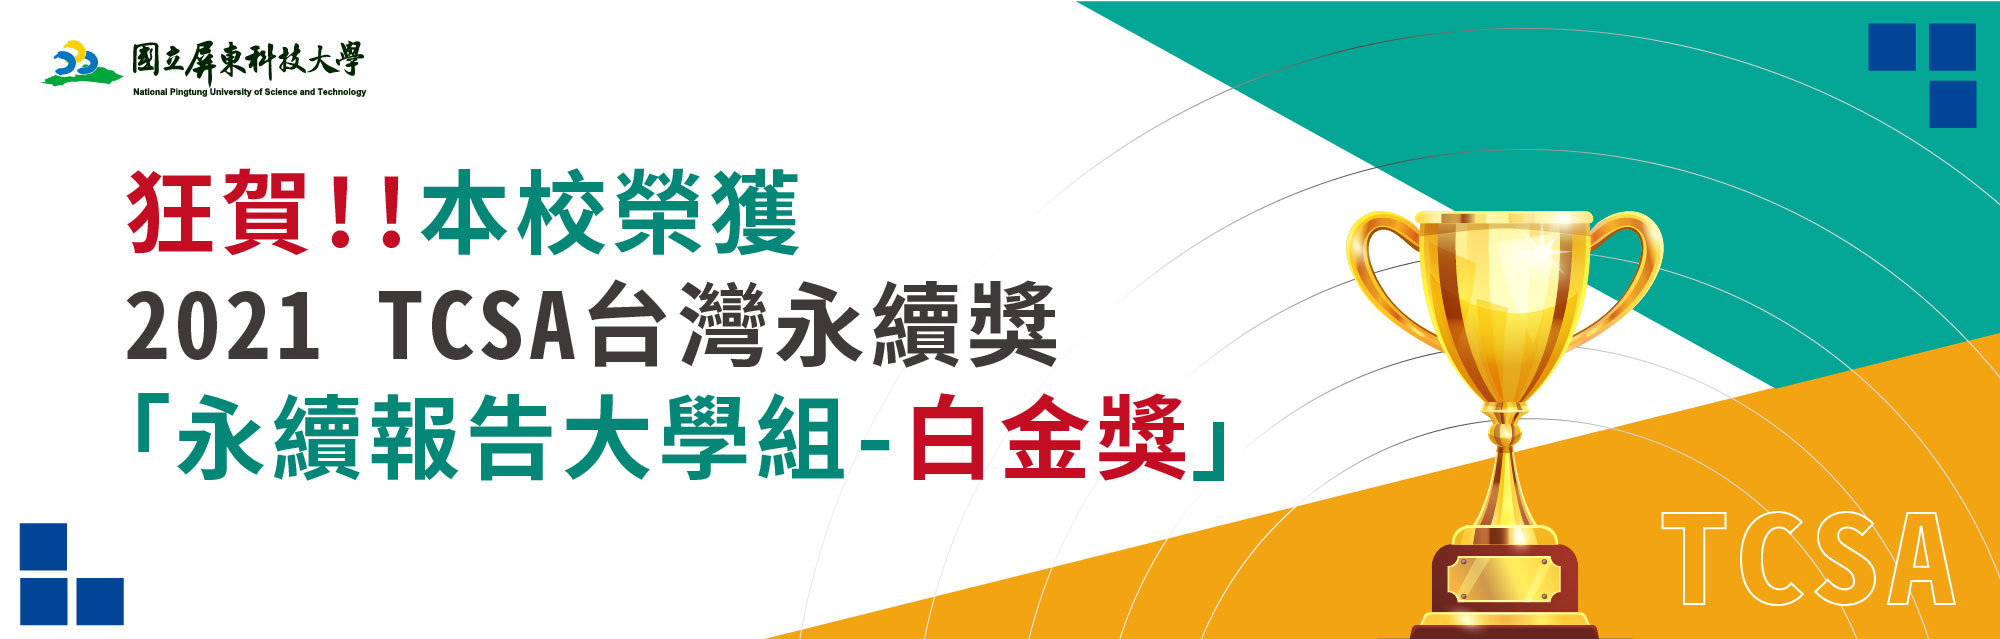 本校榮獲2021 TCSA台灣永續獎-永續報告大學組-白金獎橫幅